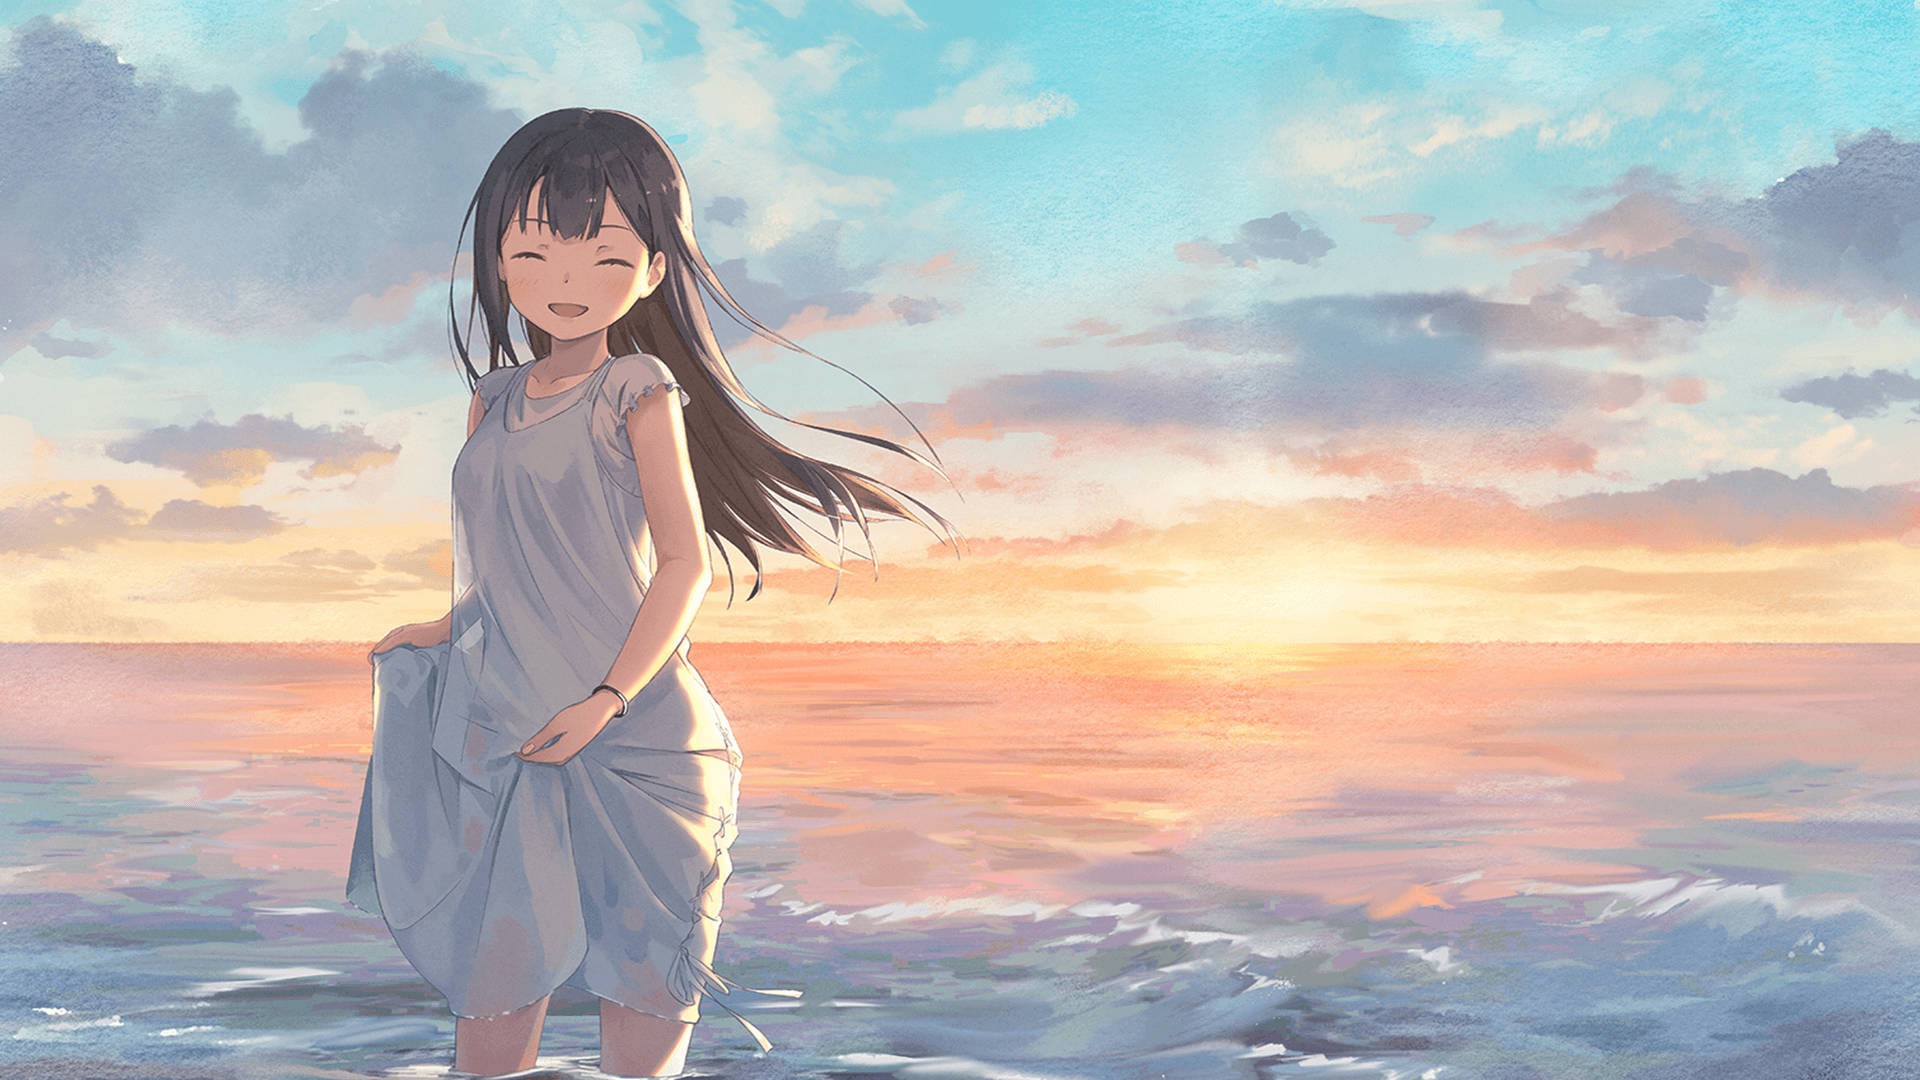 Anime Sunset [3840x2160] : r/wallpaper